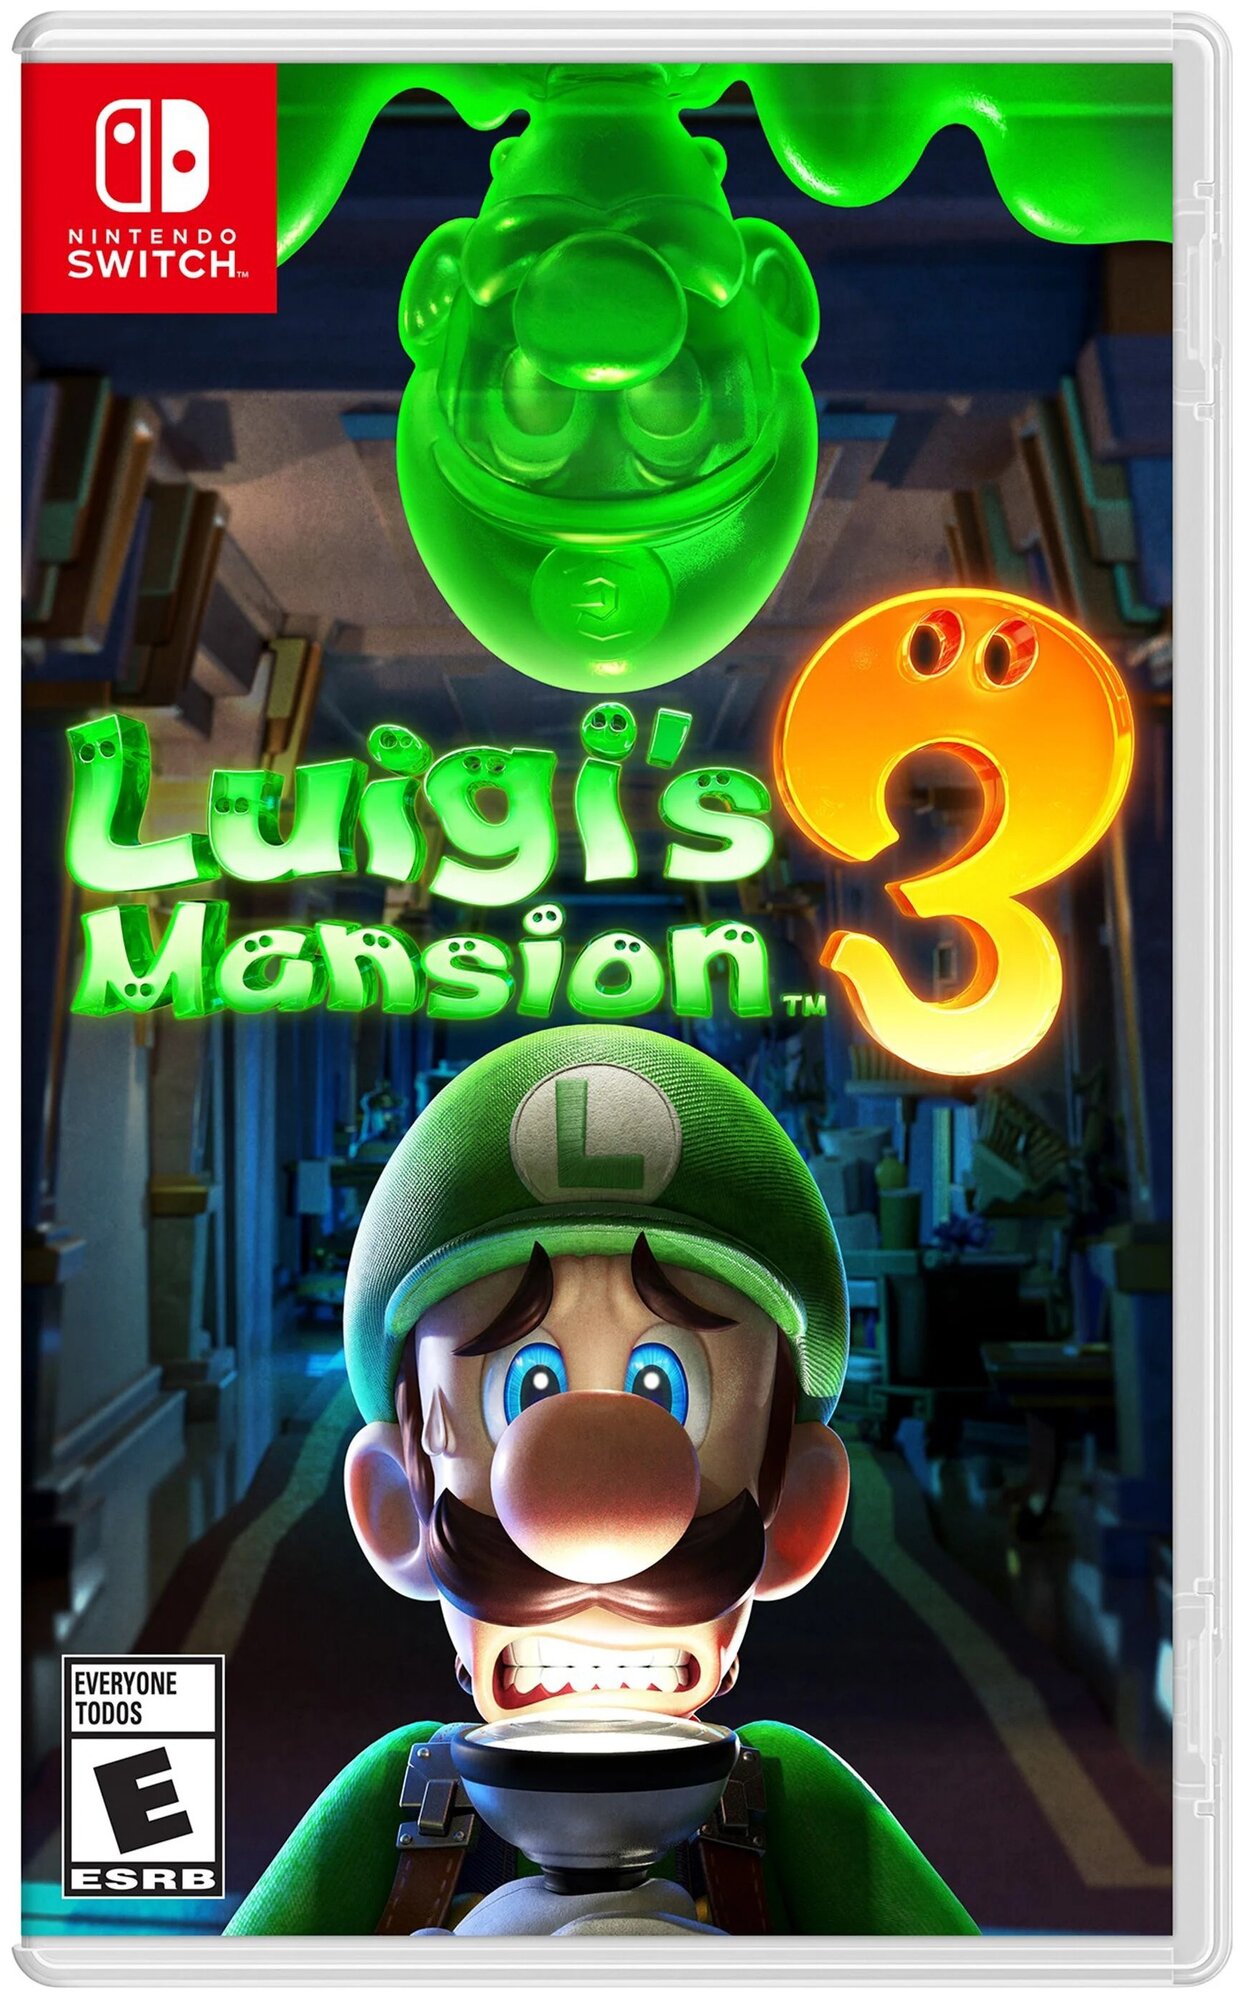 Игра Luigi's Mansion 3 для Nintendo Switch, картридж